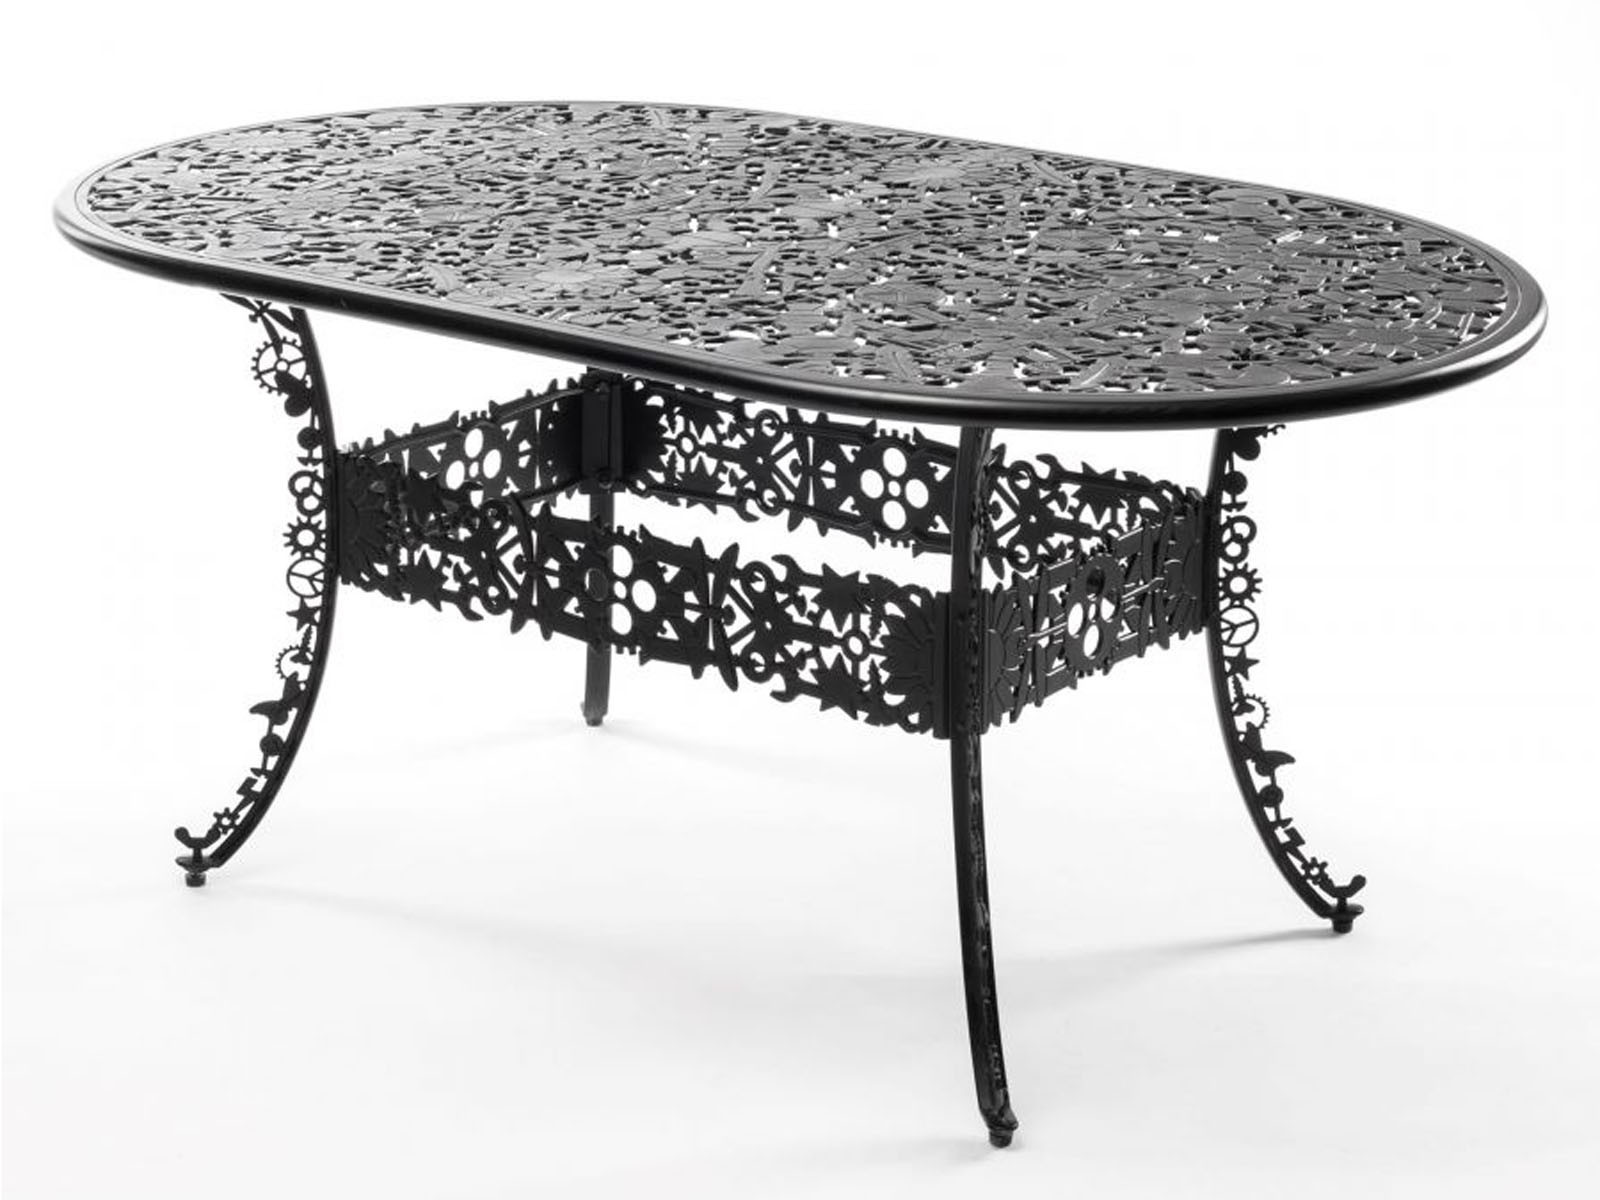 Stół Seletti Industry Garden Table Black Oval